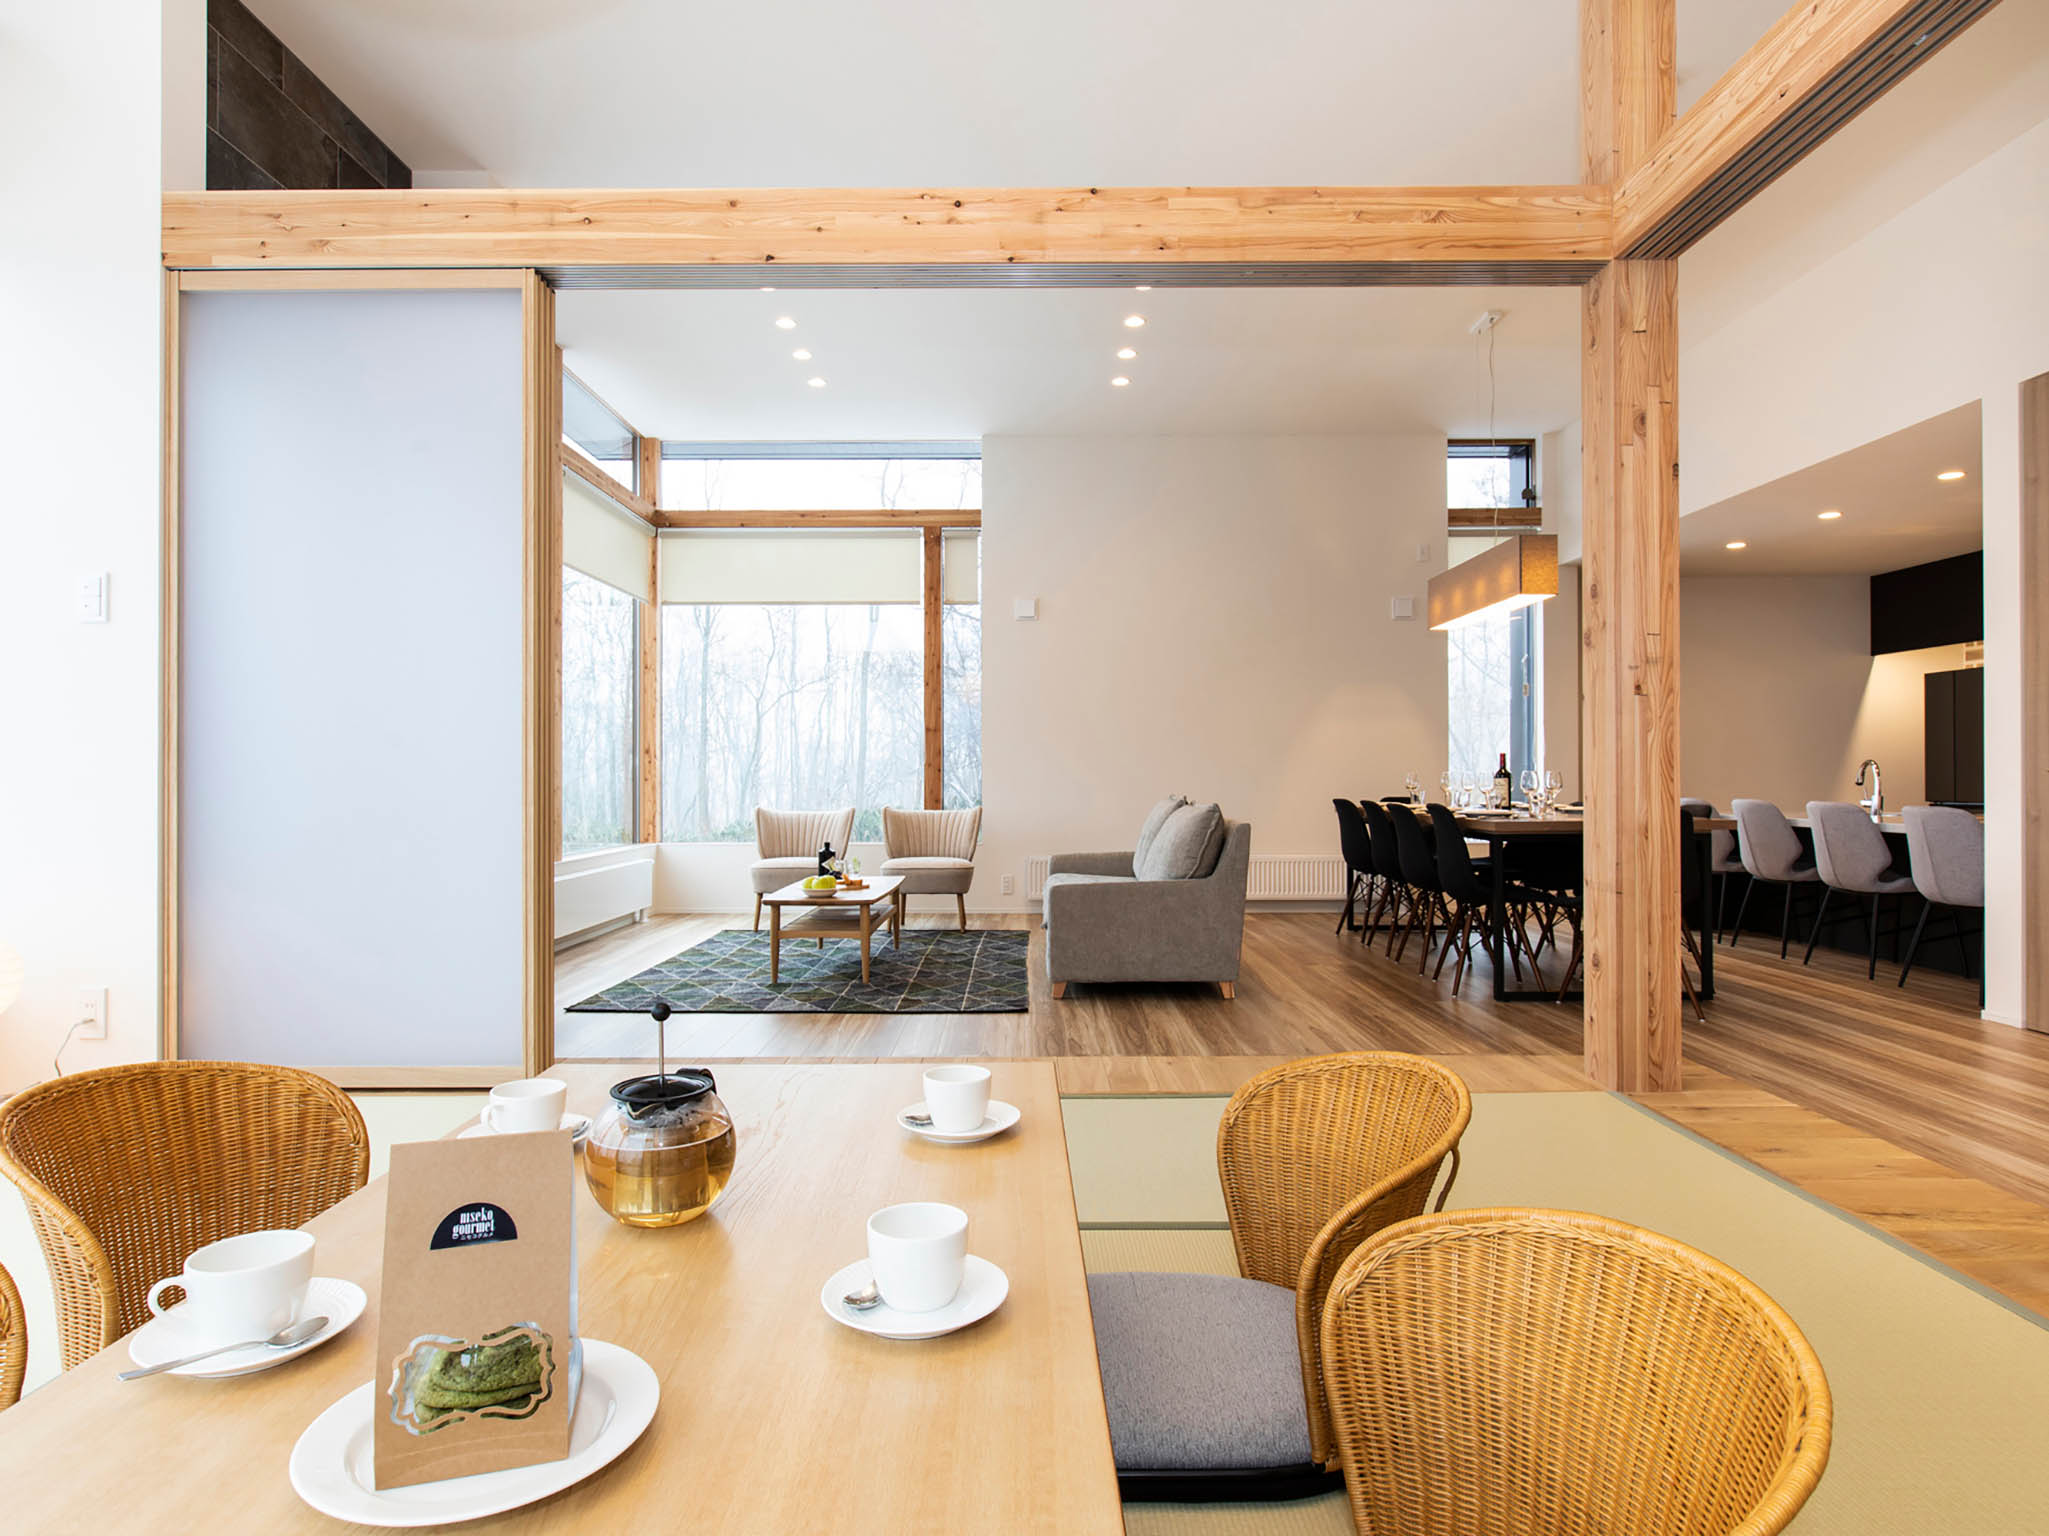 Aoyama Lodge - Indulgence in the ultra-luxe setting